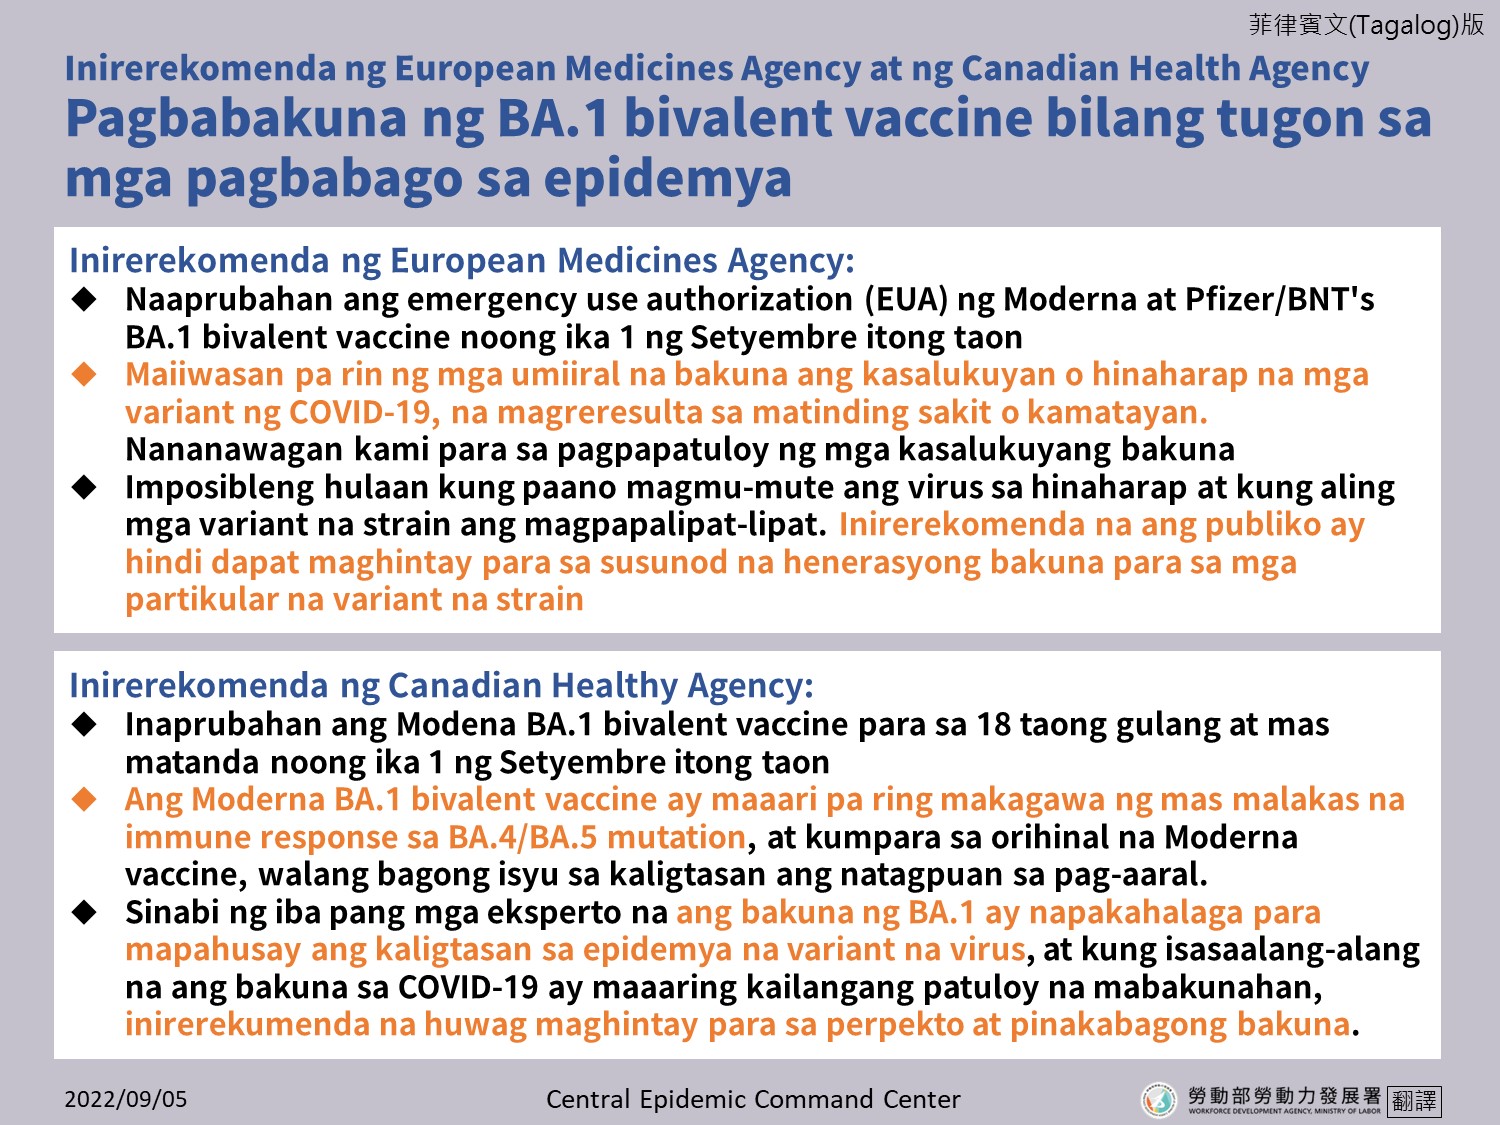 歐洲藥品管理局及加拿大衛生部均建議接種BA.1雙價疫苗因應疫情變化-菲